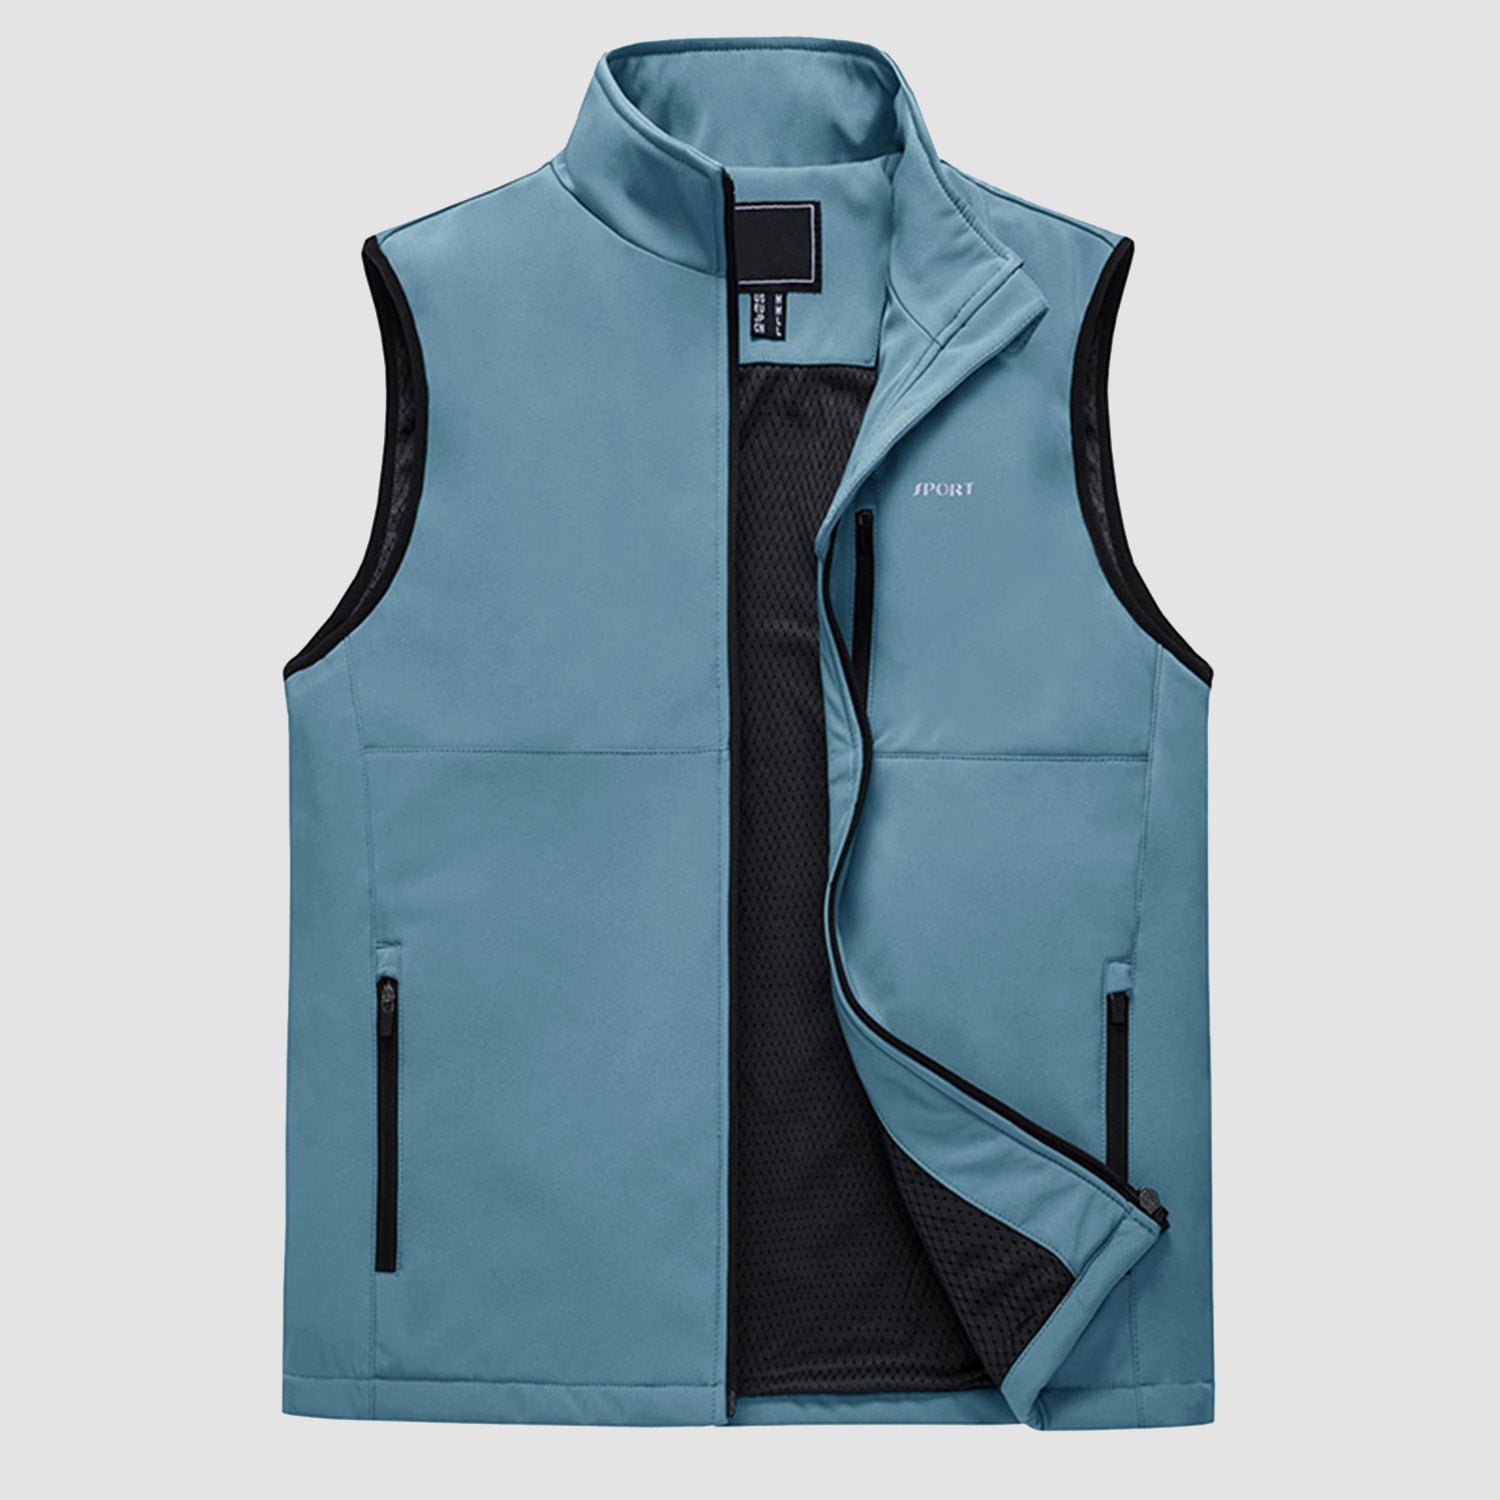 MAGCOMSEN Men's Lightweight Vest Zip-Up Sleeveless Jacket for Outdoors, Orange / 2XL